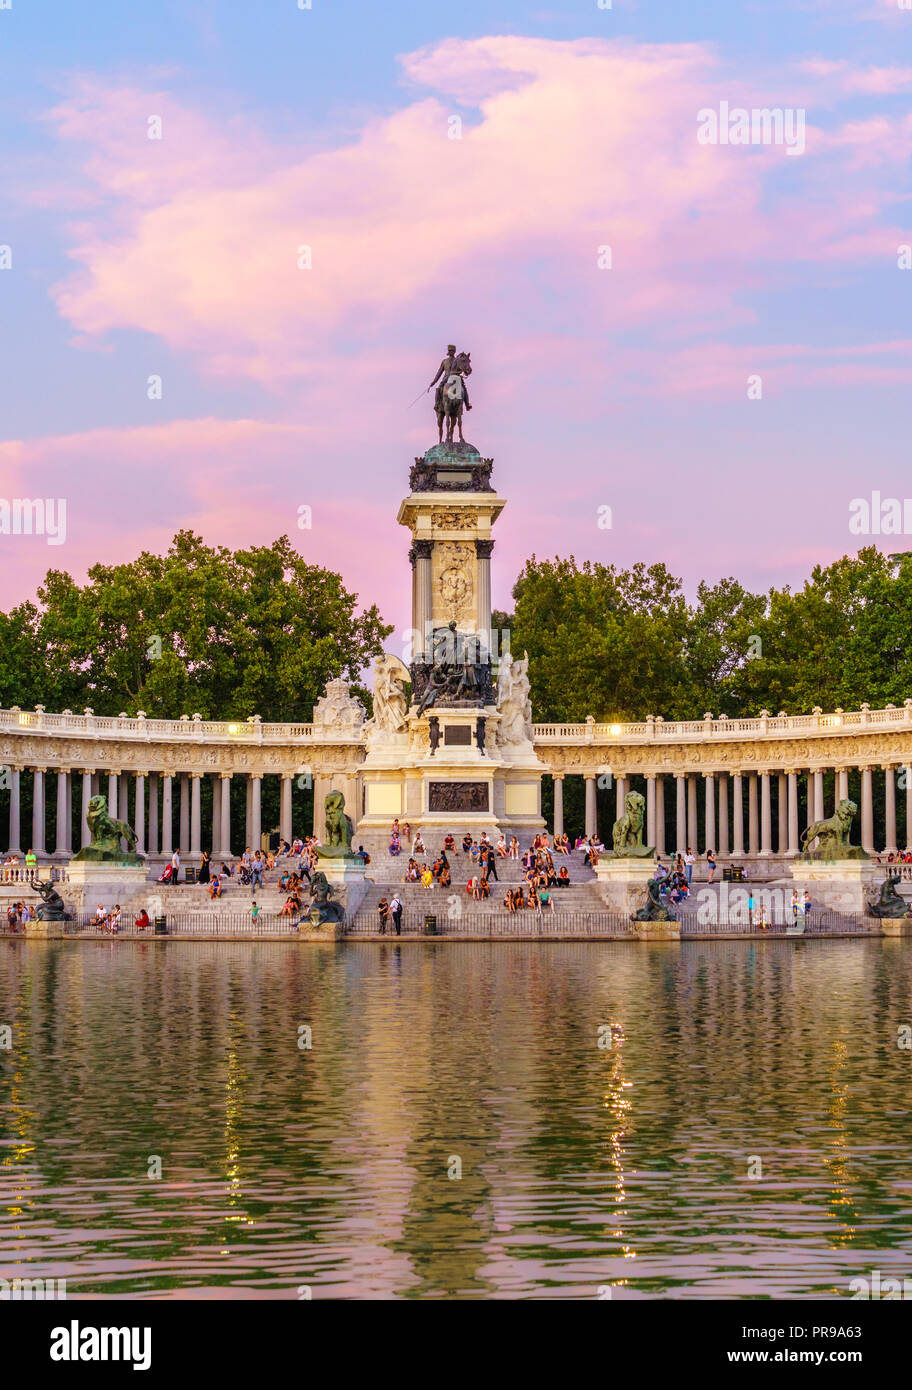 Le parc du Retiro est situé au centre-ville de Madrid, Espagne. Elle appartenait à la monarchie espagnole jusqu'à la fin du xixe siècle, c'est maintenant un parc public. Banque D'Images